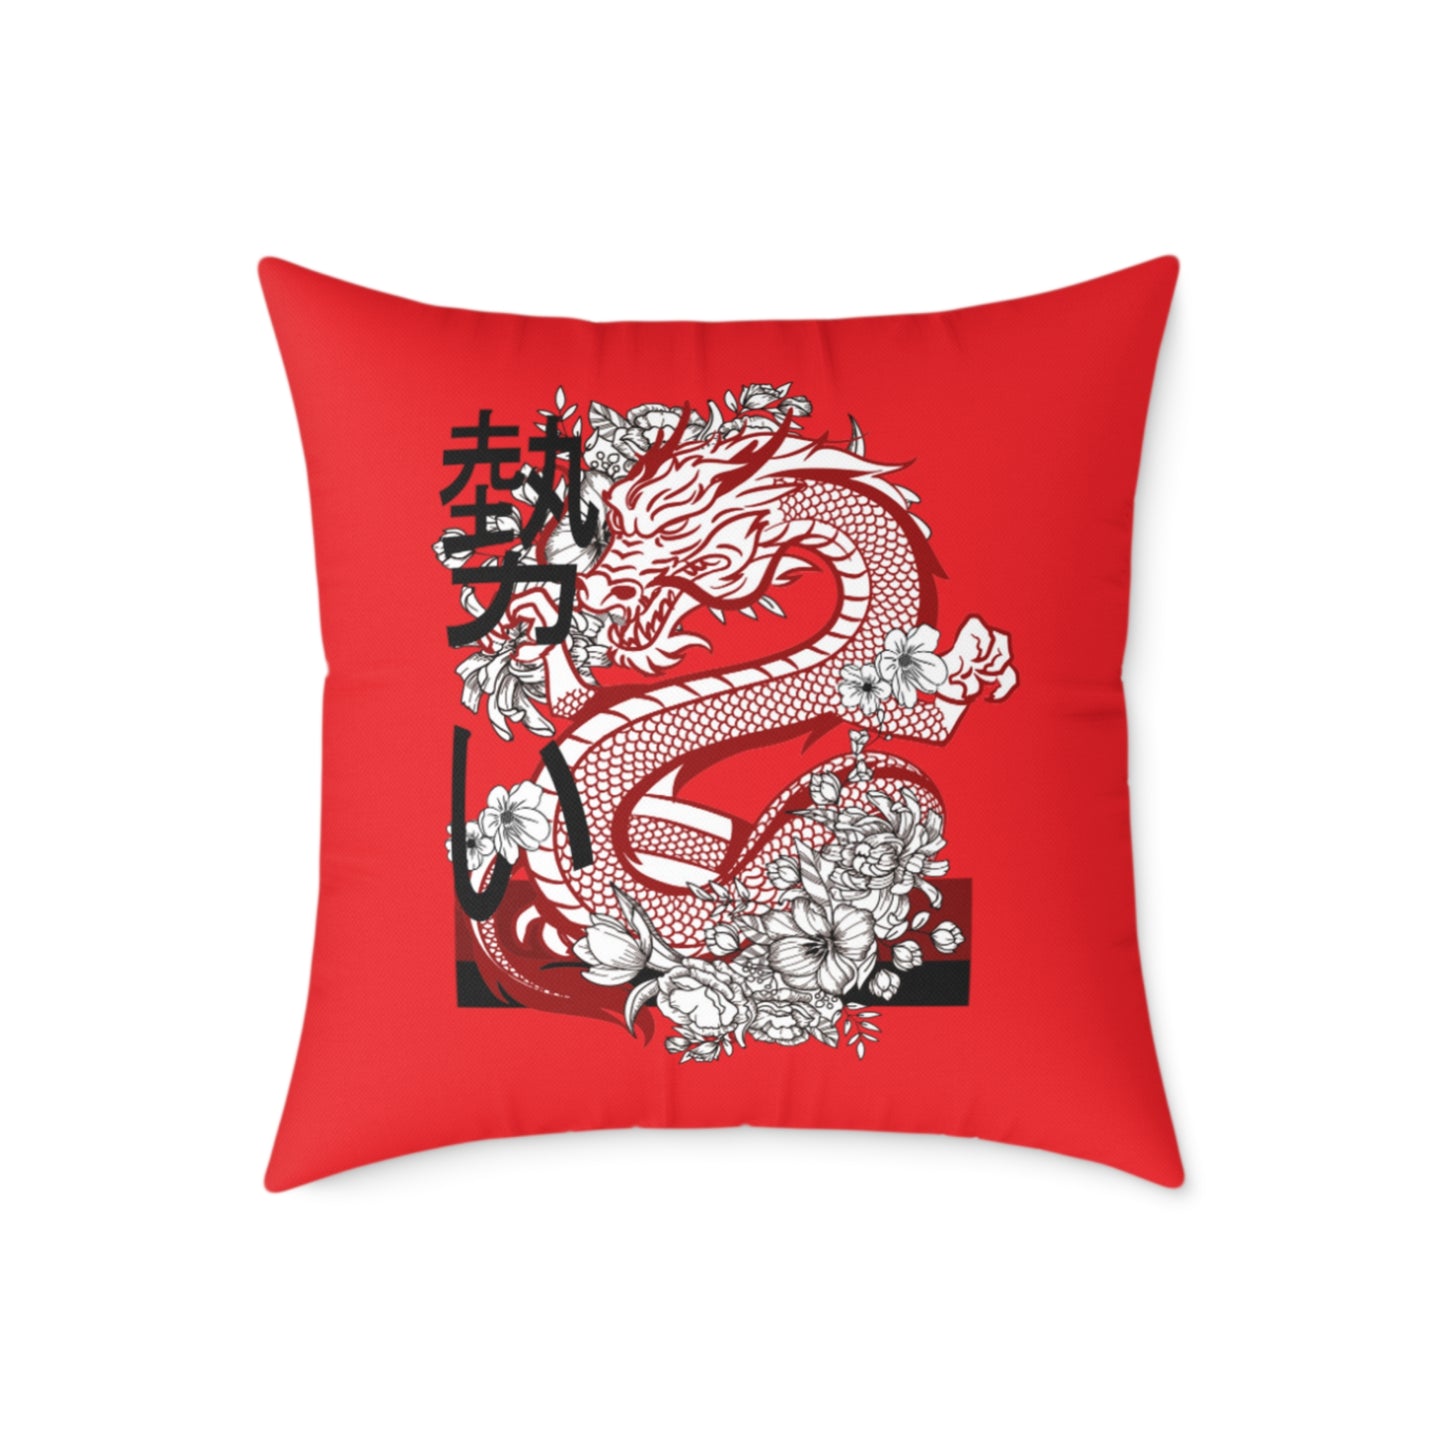 Spun Polyester Pillow: Dragons Red